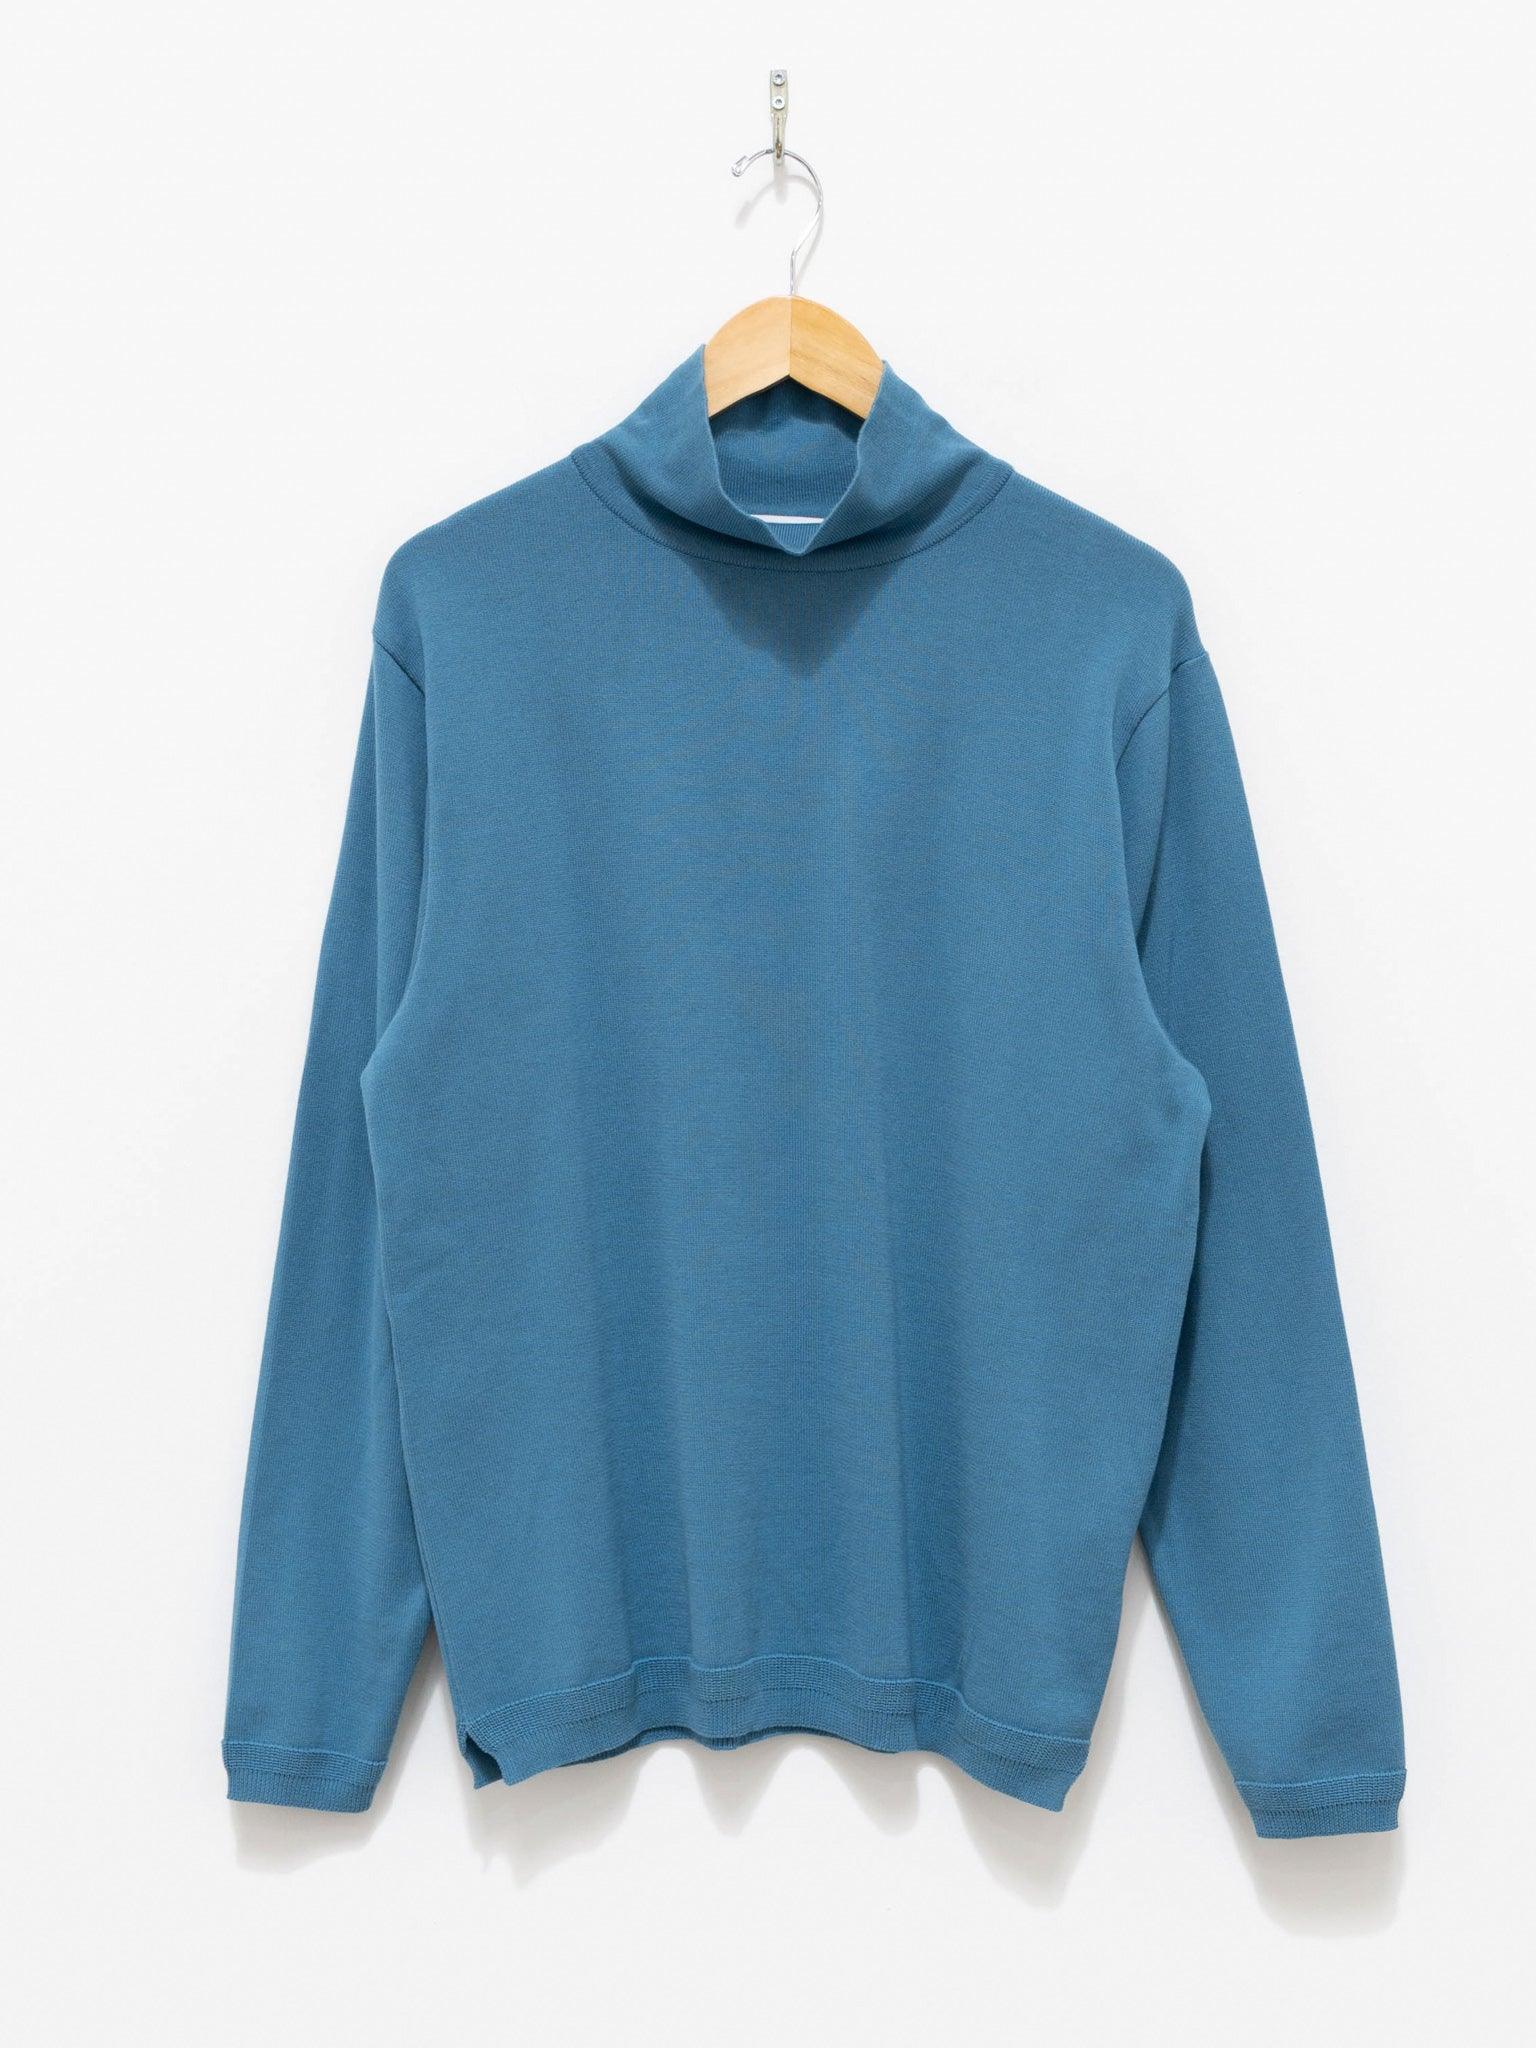 Namu Shop - Fujito Turtleneck Knit T-Shirt - Sax